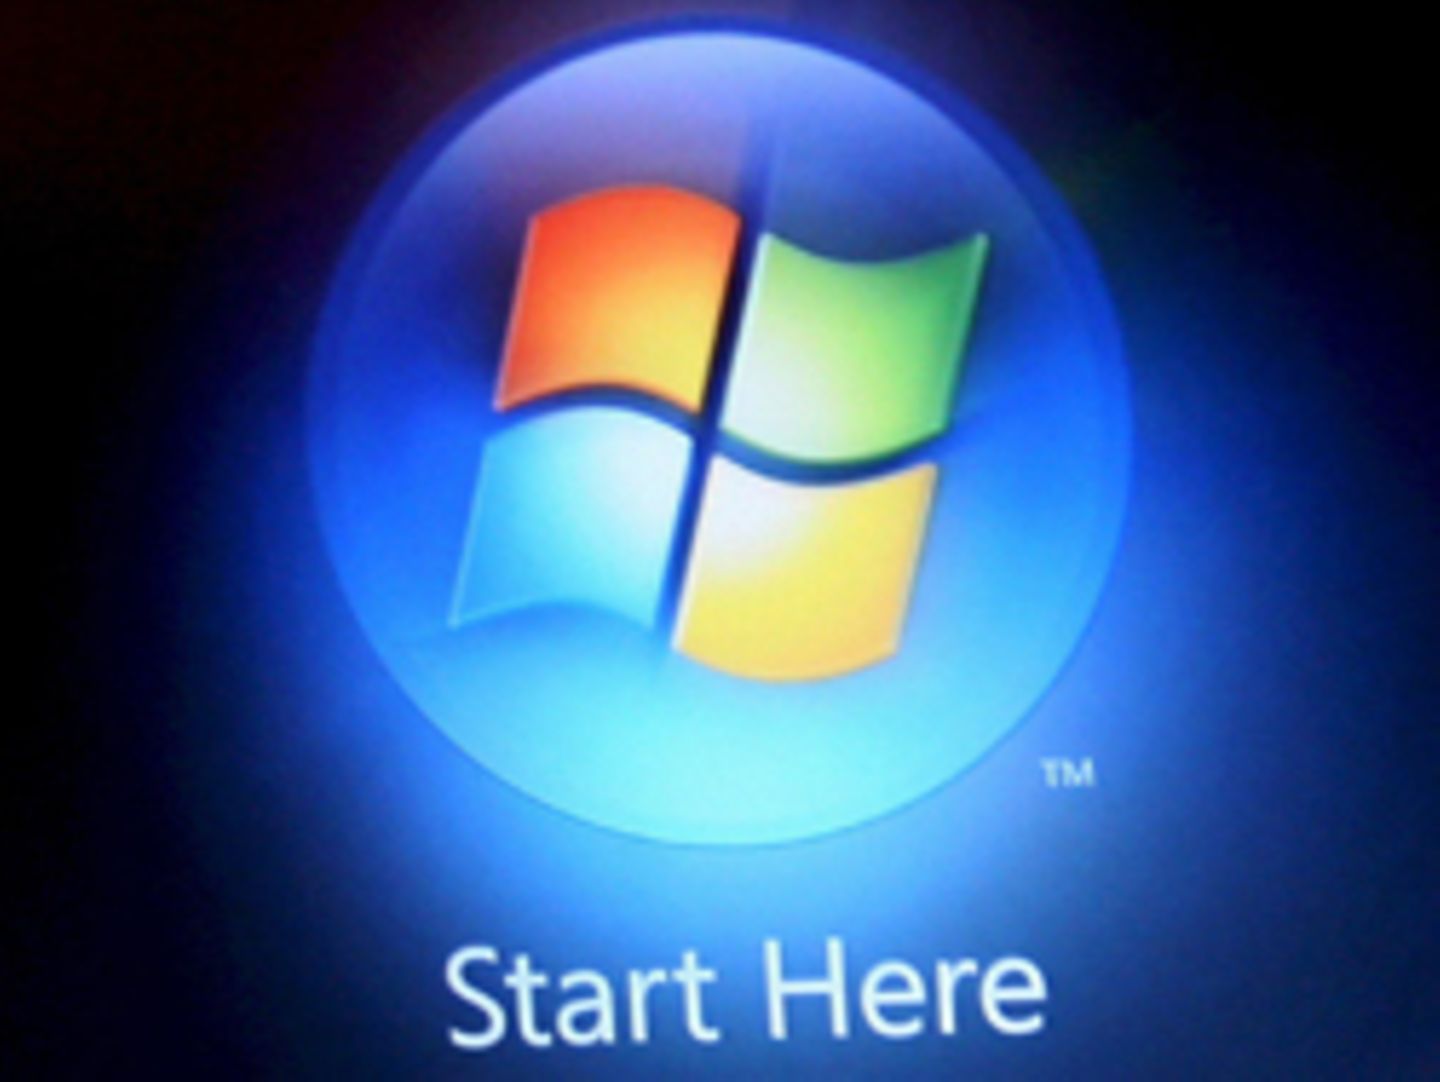 Das Betriebssystem Windows 7, Nachfolger von Vista, wird wohl schon 2009 in den Handel kommen